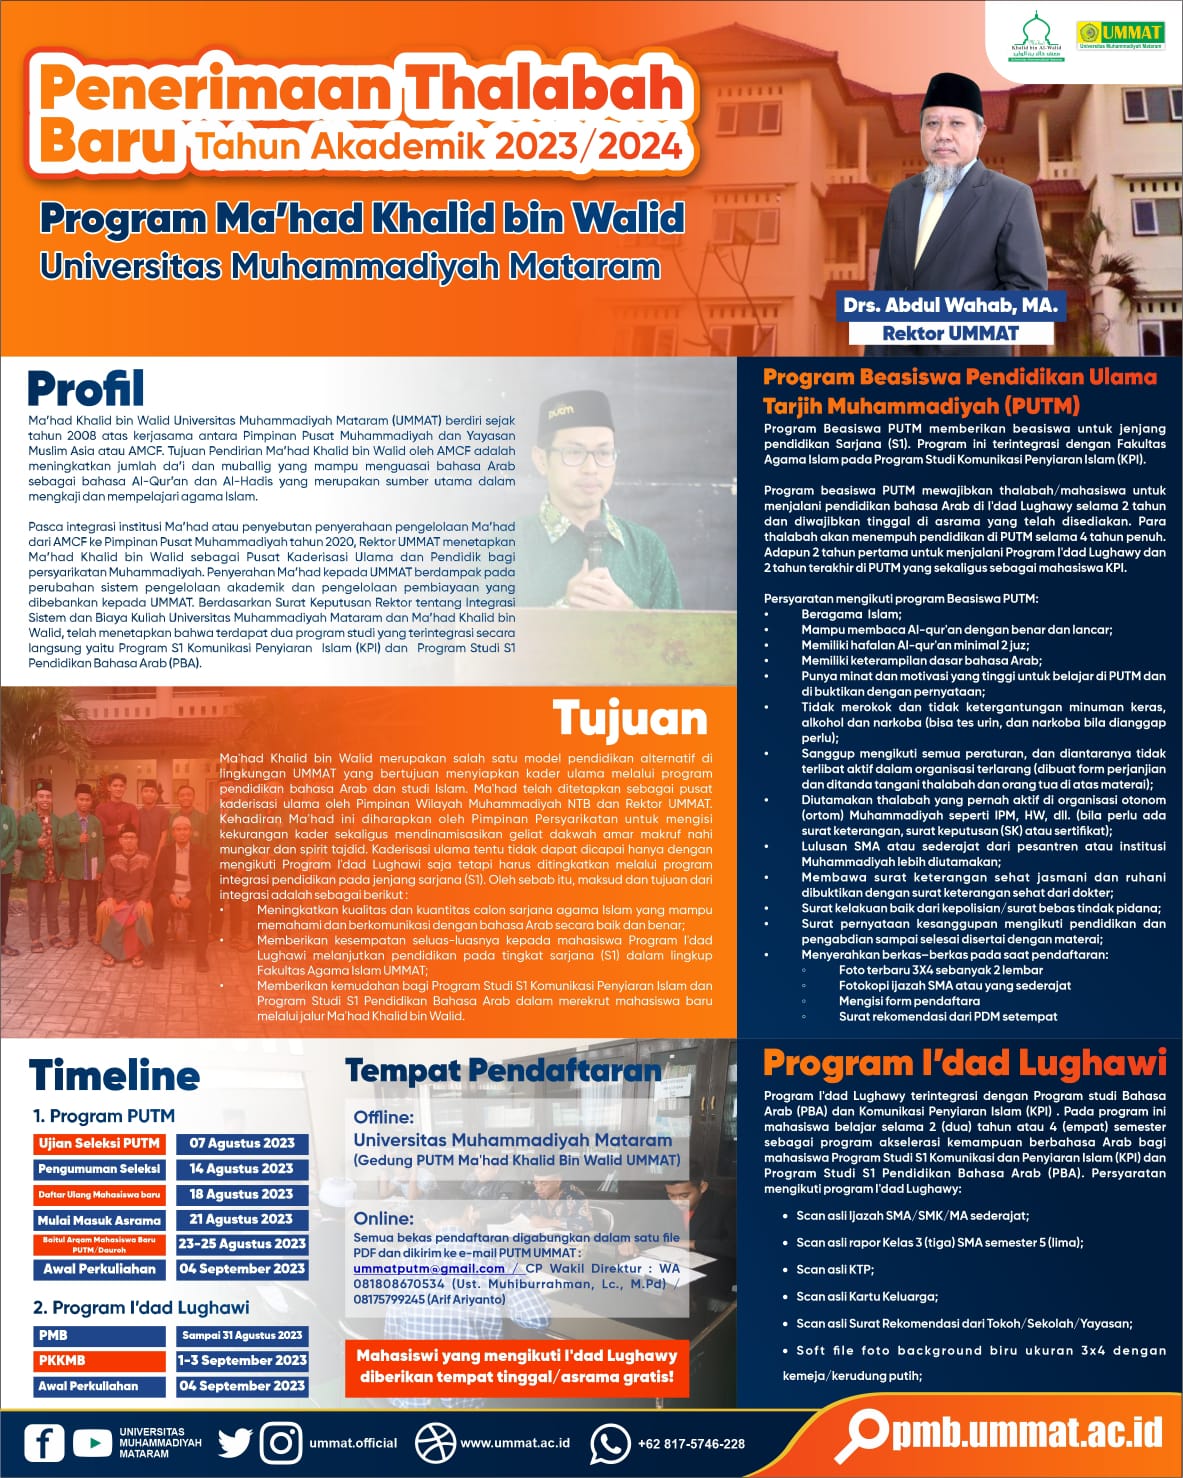 Penerimaan Thalabah Baru Program Ma’had Khalid bin Walid UMMAT T.A 2023/2024